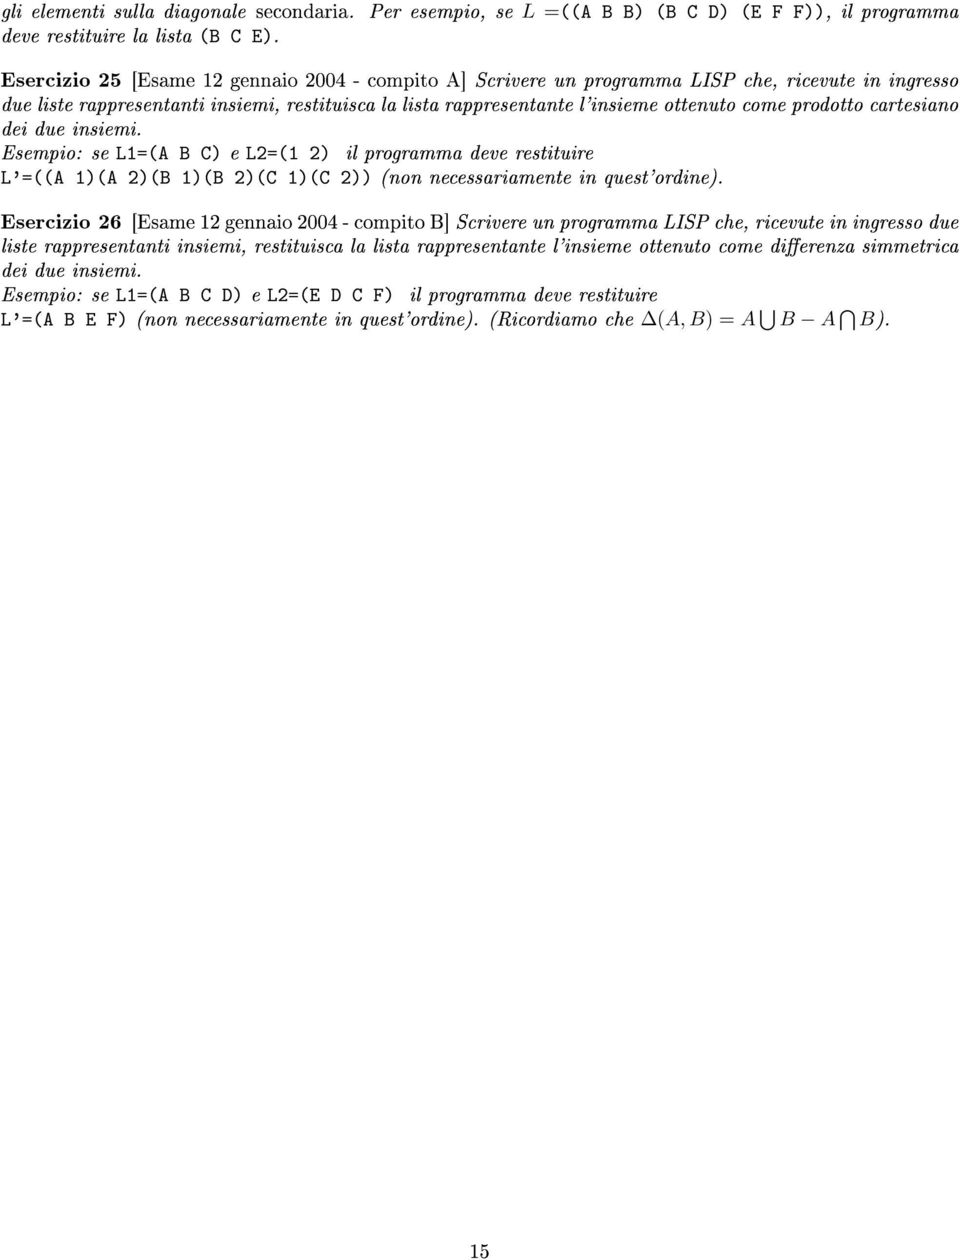 prodotto cartesiano dei due insiemi. Esempio: se L1=(A B C) e L2=(1 2) il programma deve restituire L'=((A 1)(A 2)(B 1)(B 2)(C 1)(C 2)) (non necessariamente in quest'ordine).